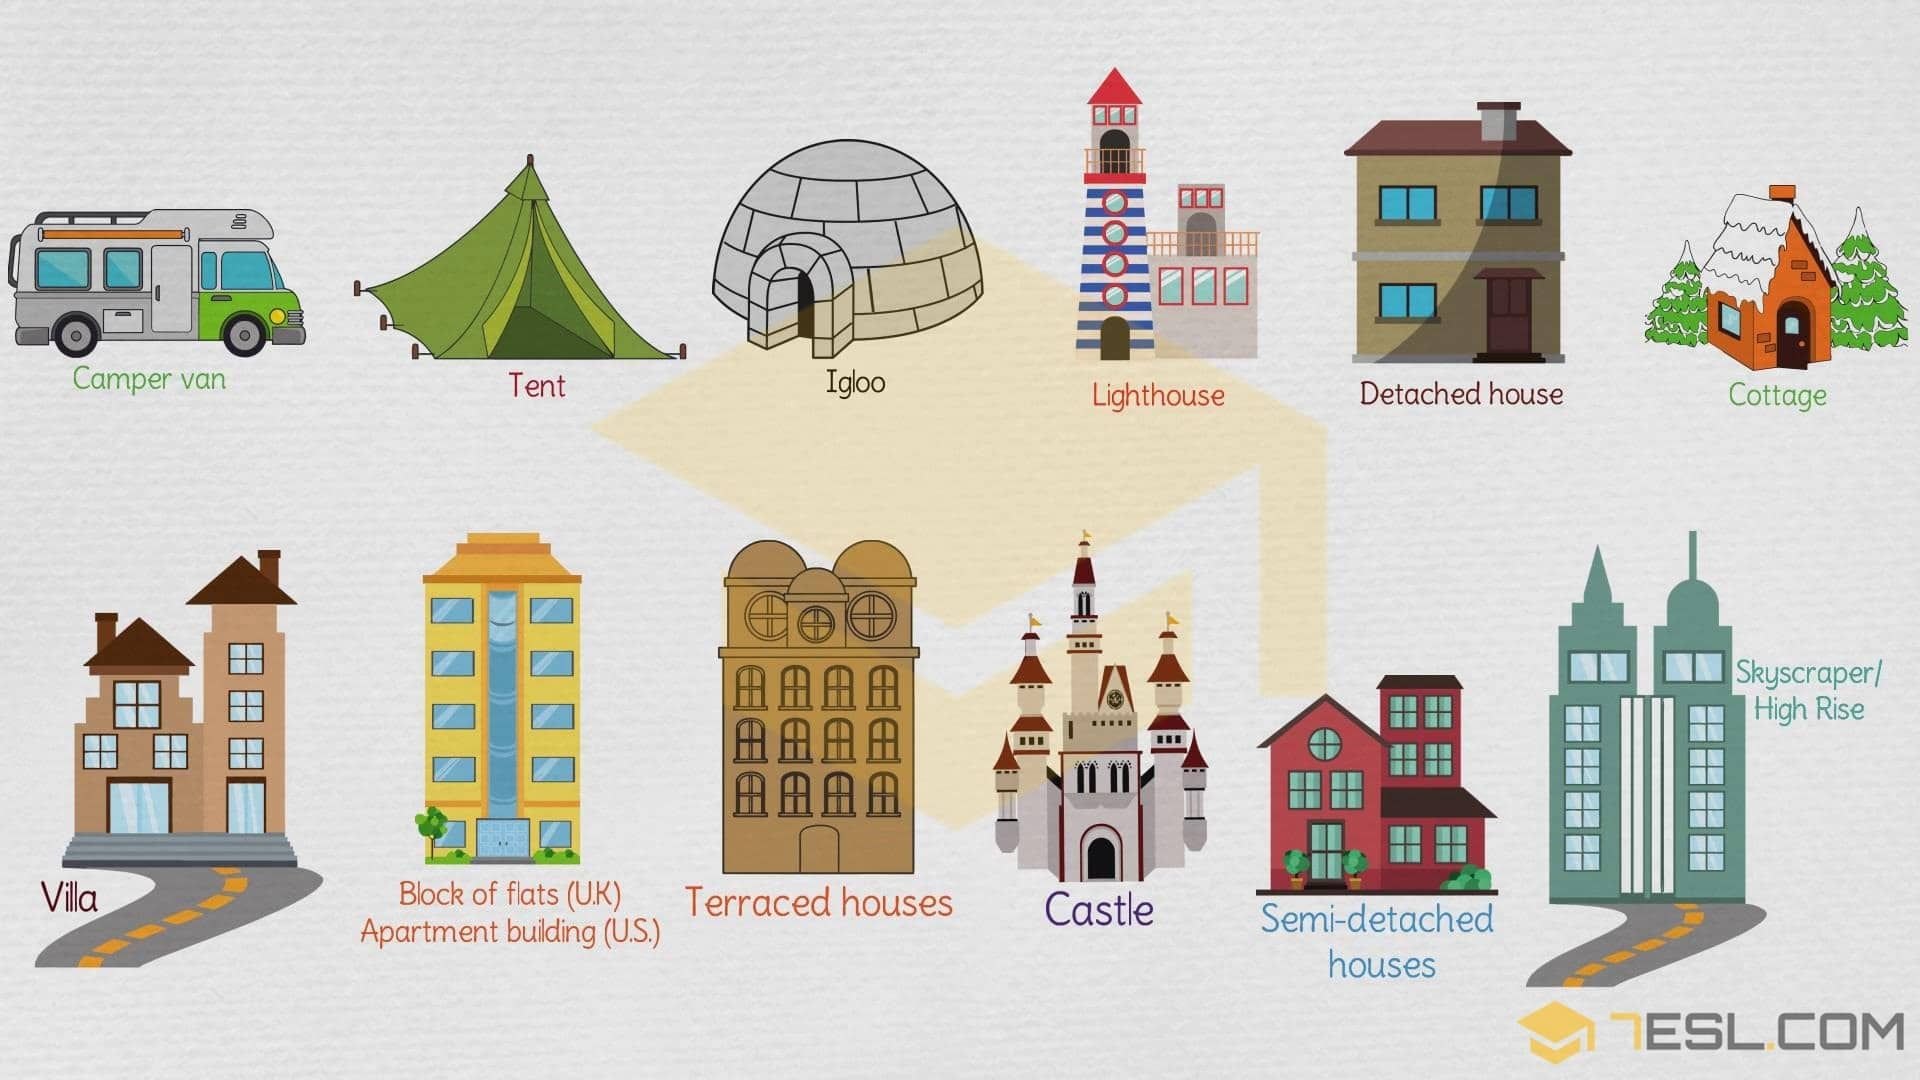 Название домов на английском. Иллюстрации разных домов. Изображения различных архитектурных построек. Картинки здания дома. Здания разной архитектуры для дошкольников.